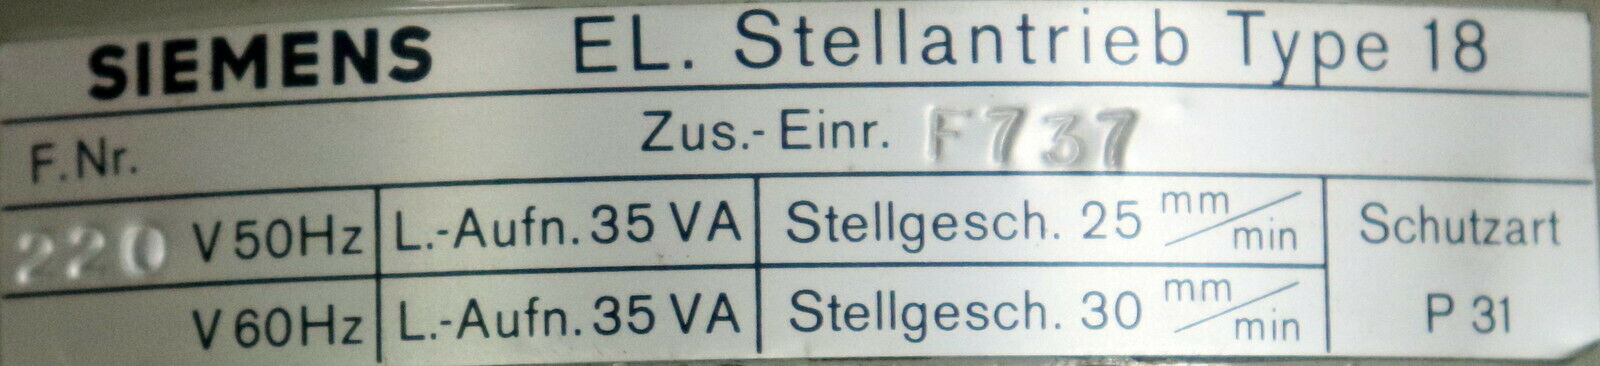 SIEMENS Elektrischer Stellantrieb für Ventile Type 18 Zus.-Einr. F737 - 2kN